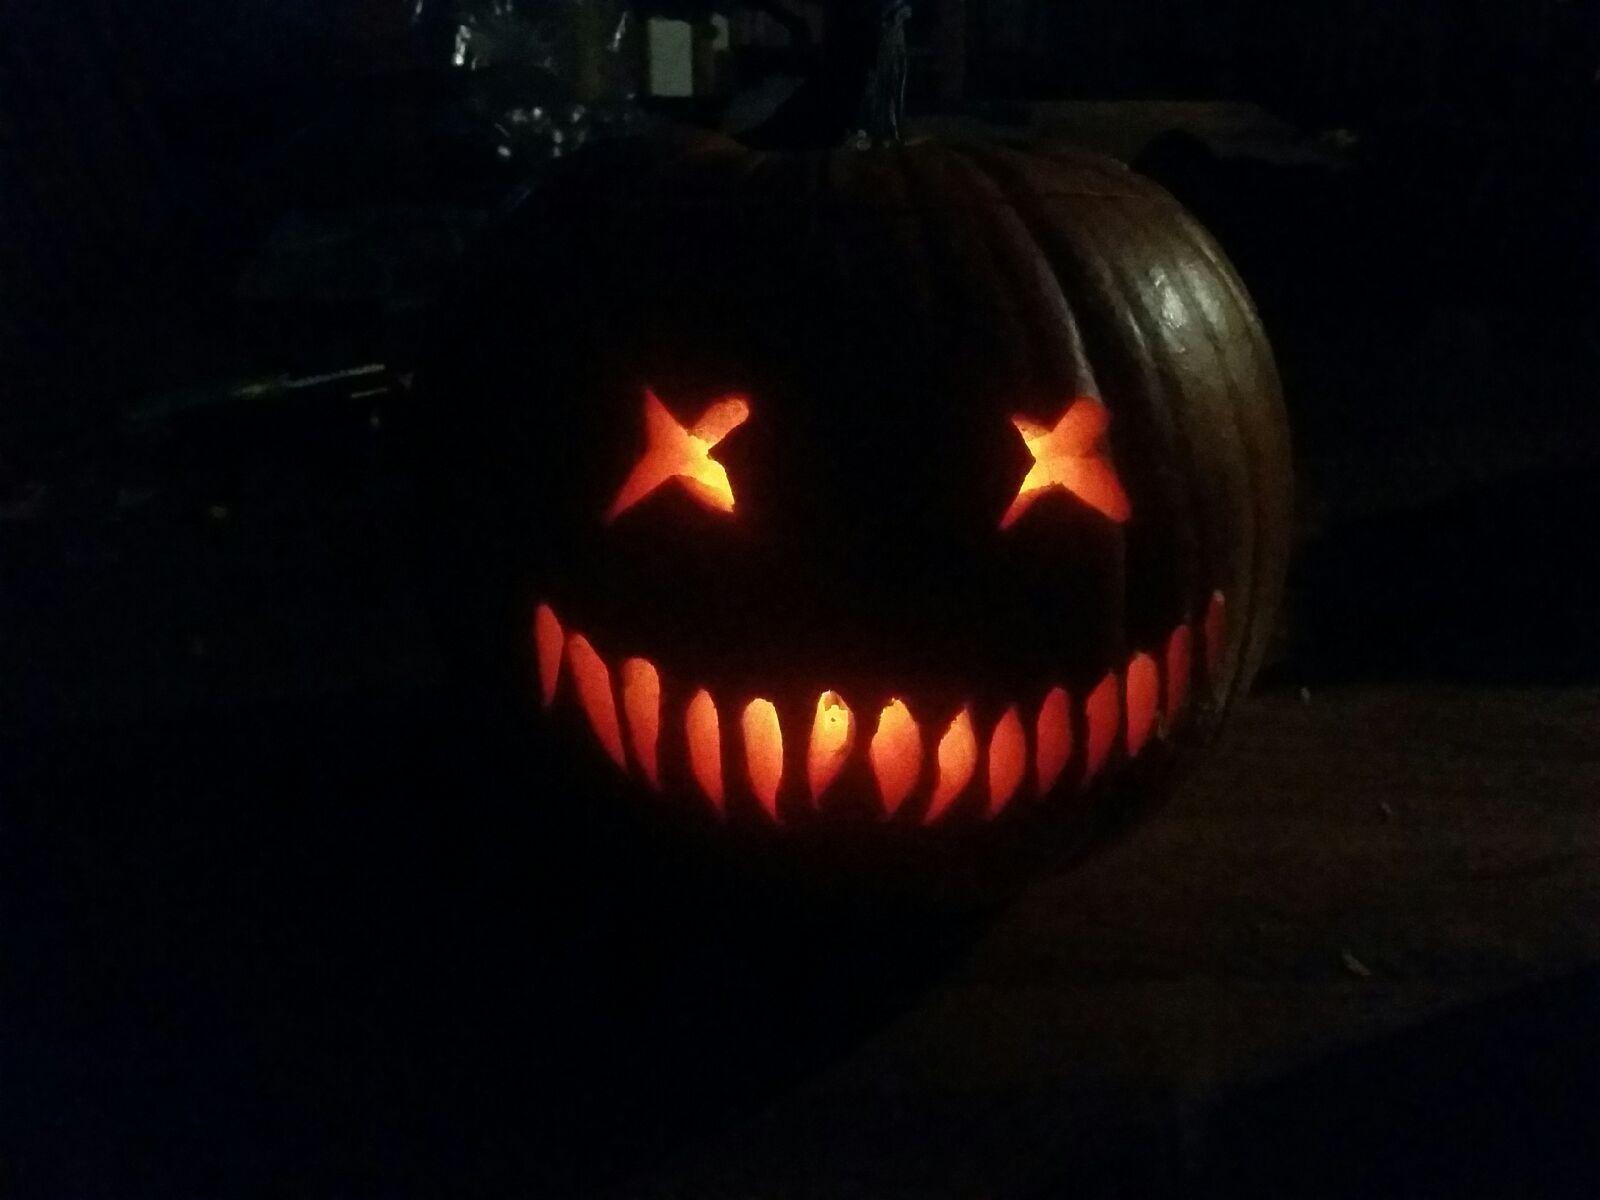 Last night's pumpkin carving, is Sam's Trick 'r Treat pumpkin. I Love it!